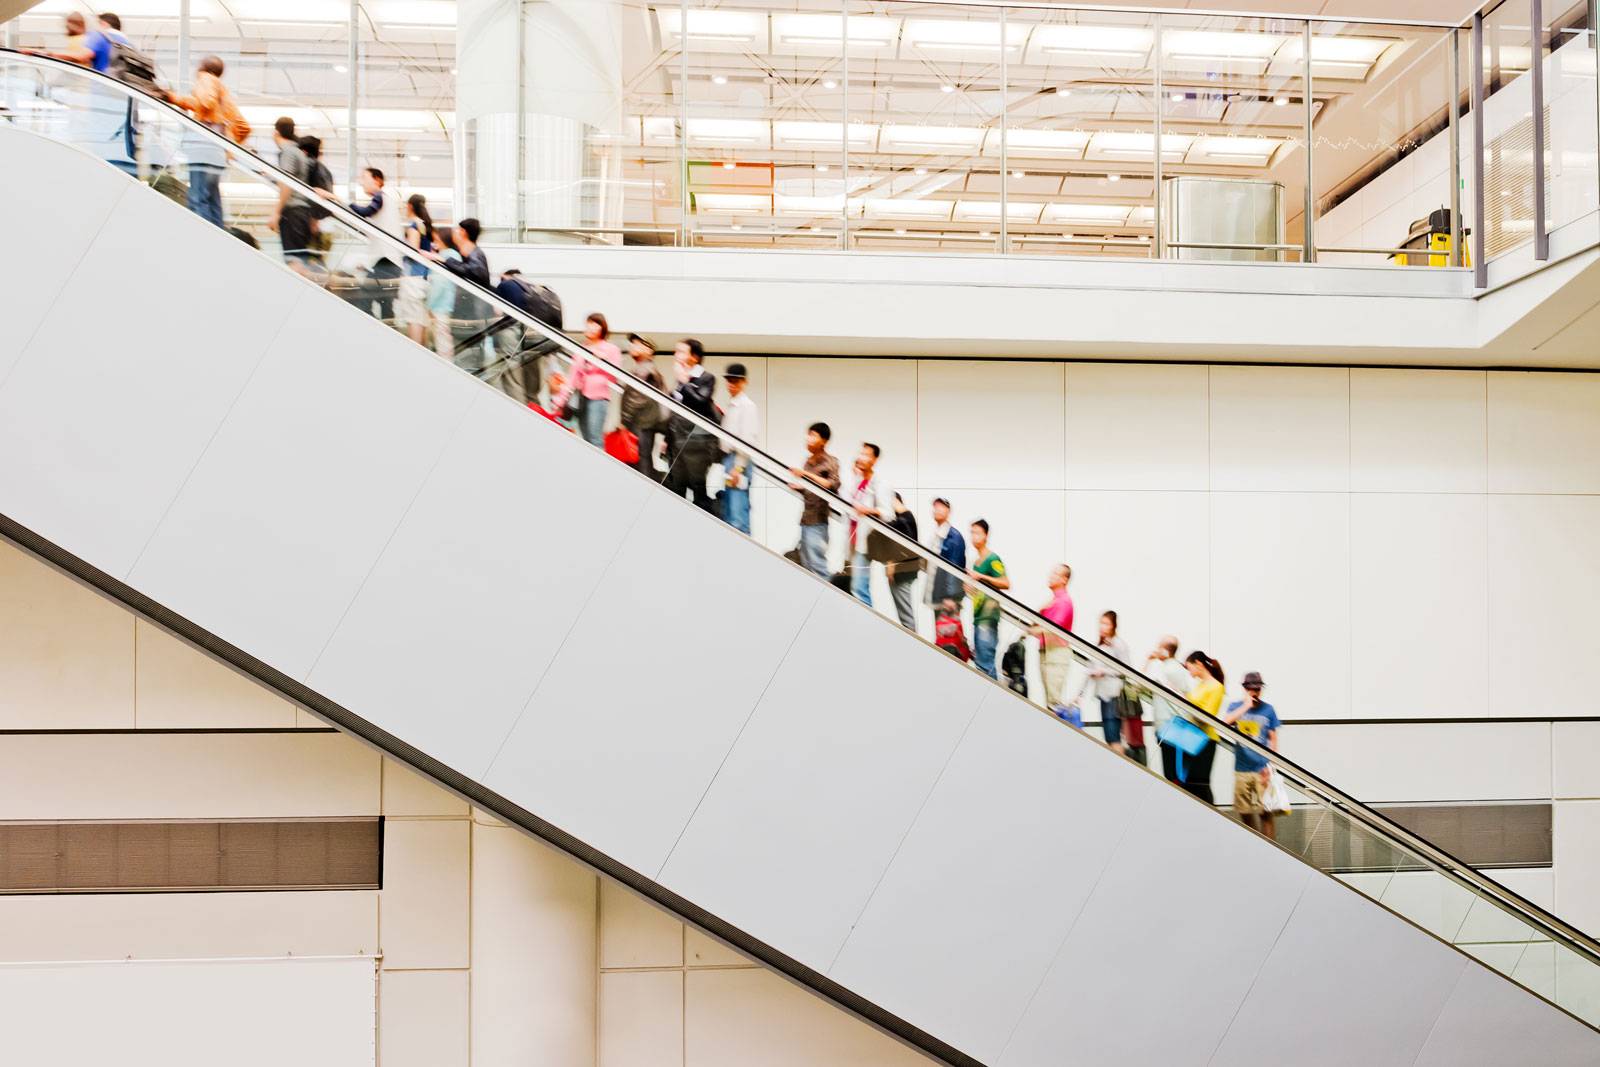 Customers in an escalator